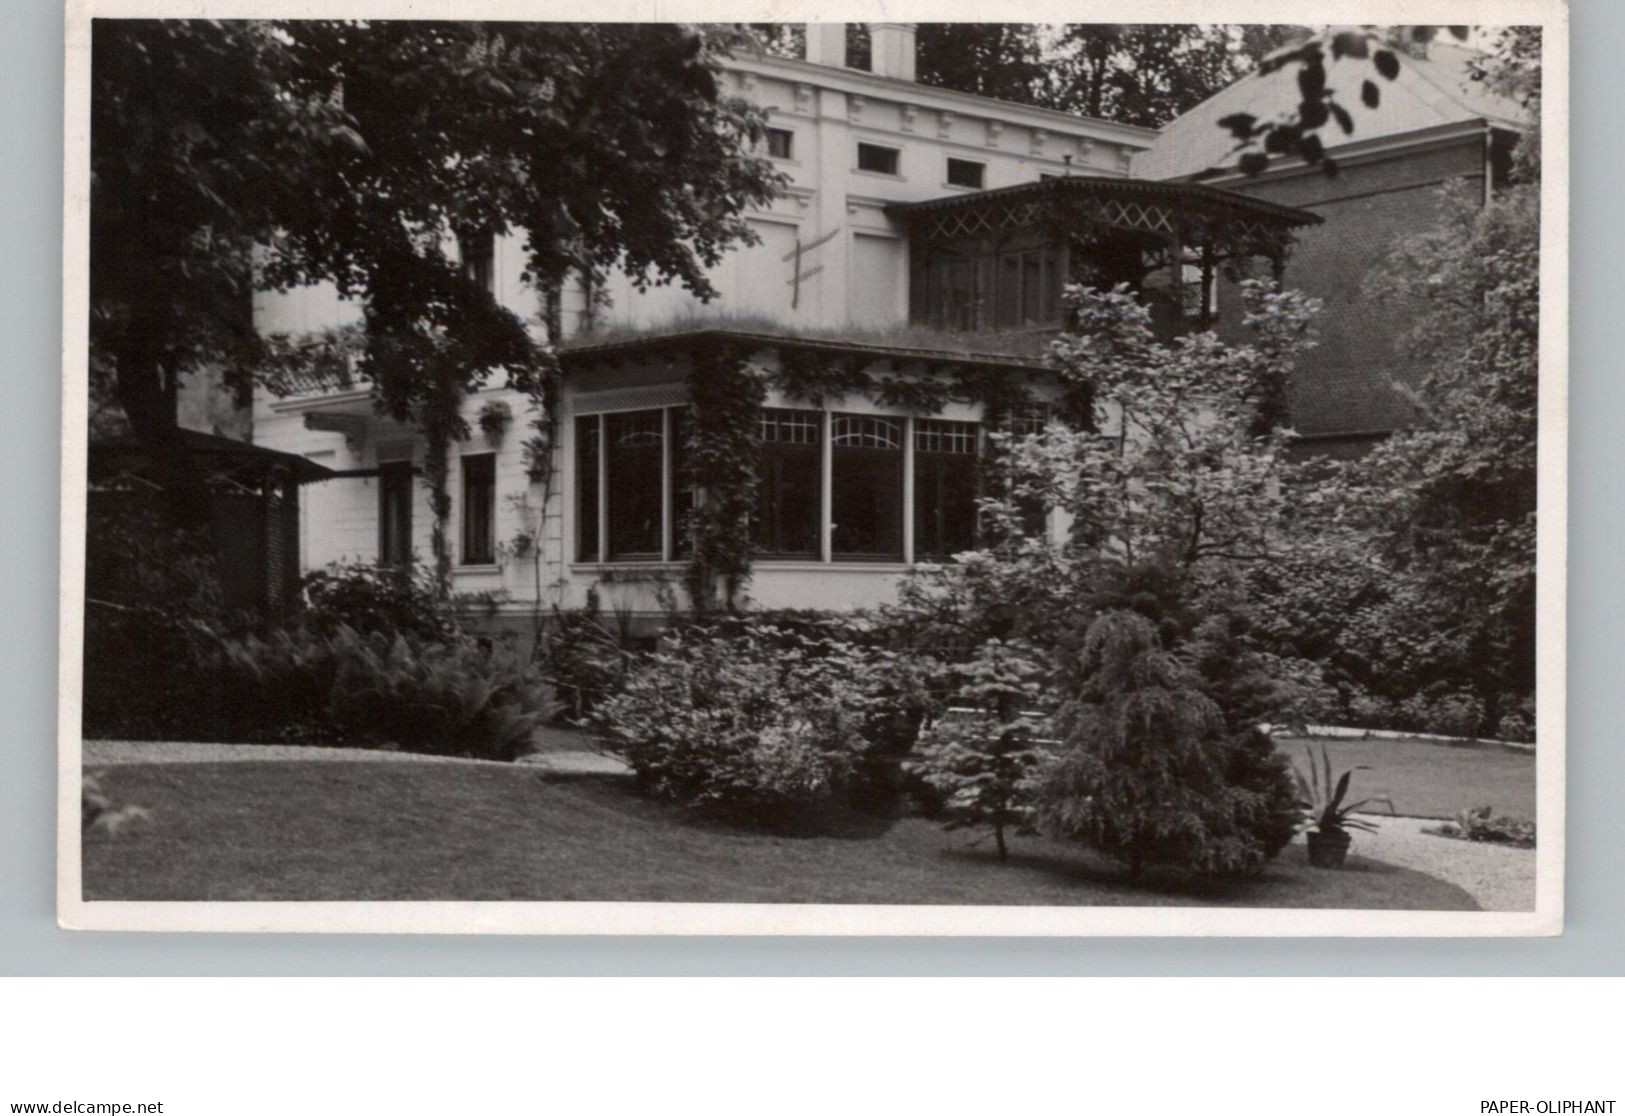 4440 RHEINE, Privathaus, Photo-AK, 1937 - Rheine